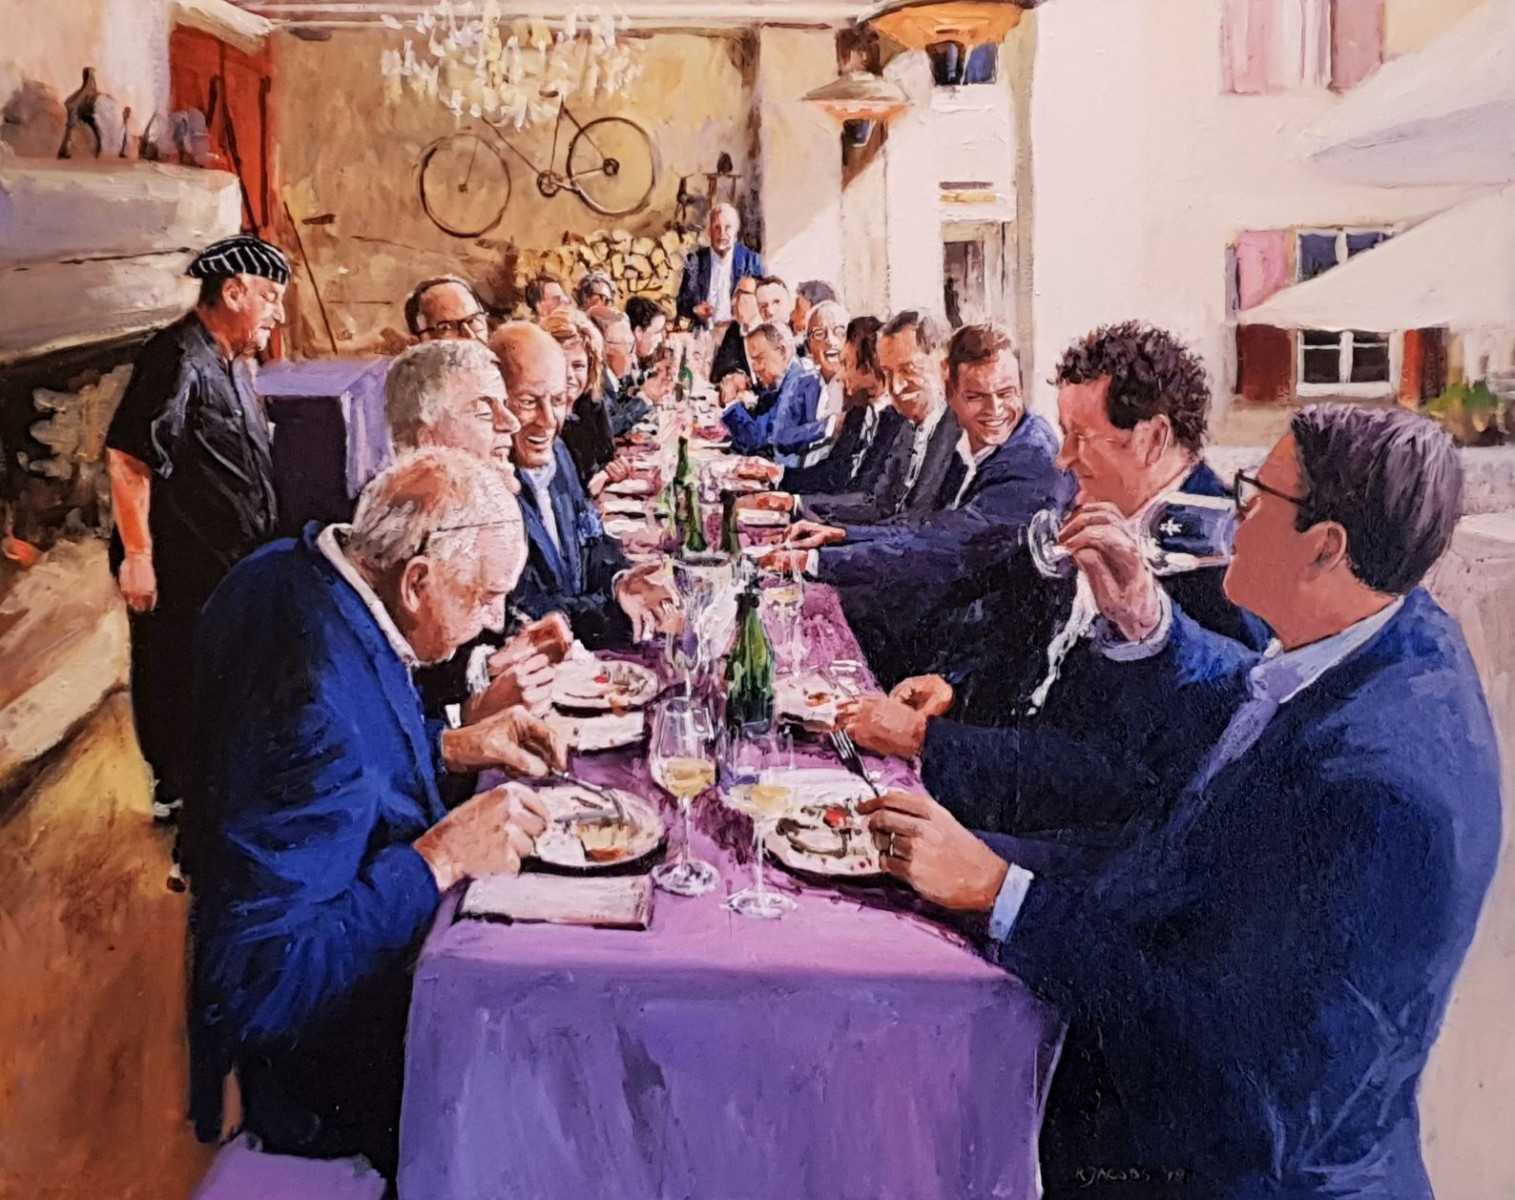 Rob Jacobs schildert doek van de diner-scène op het tafel in Wachenheim op 181106.